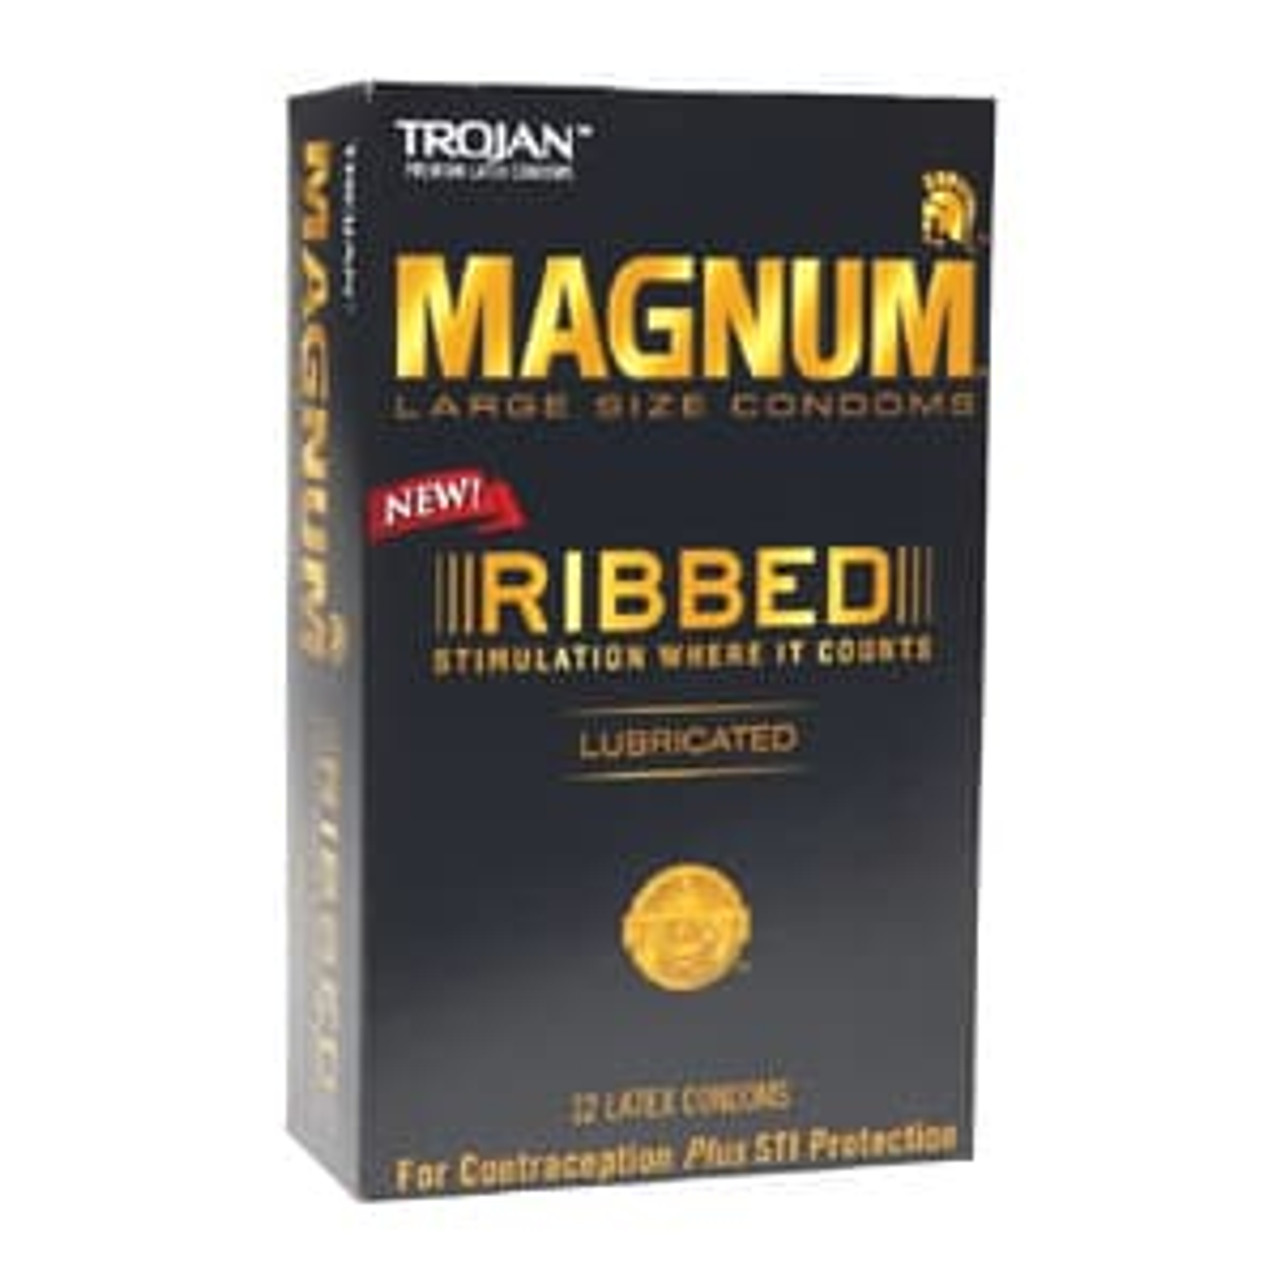 Buy Trojan Magnum Ribbed Condoms Online | CondomsFast